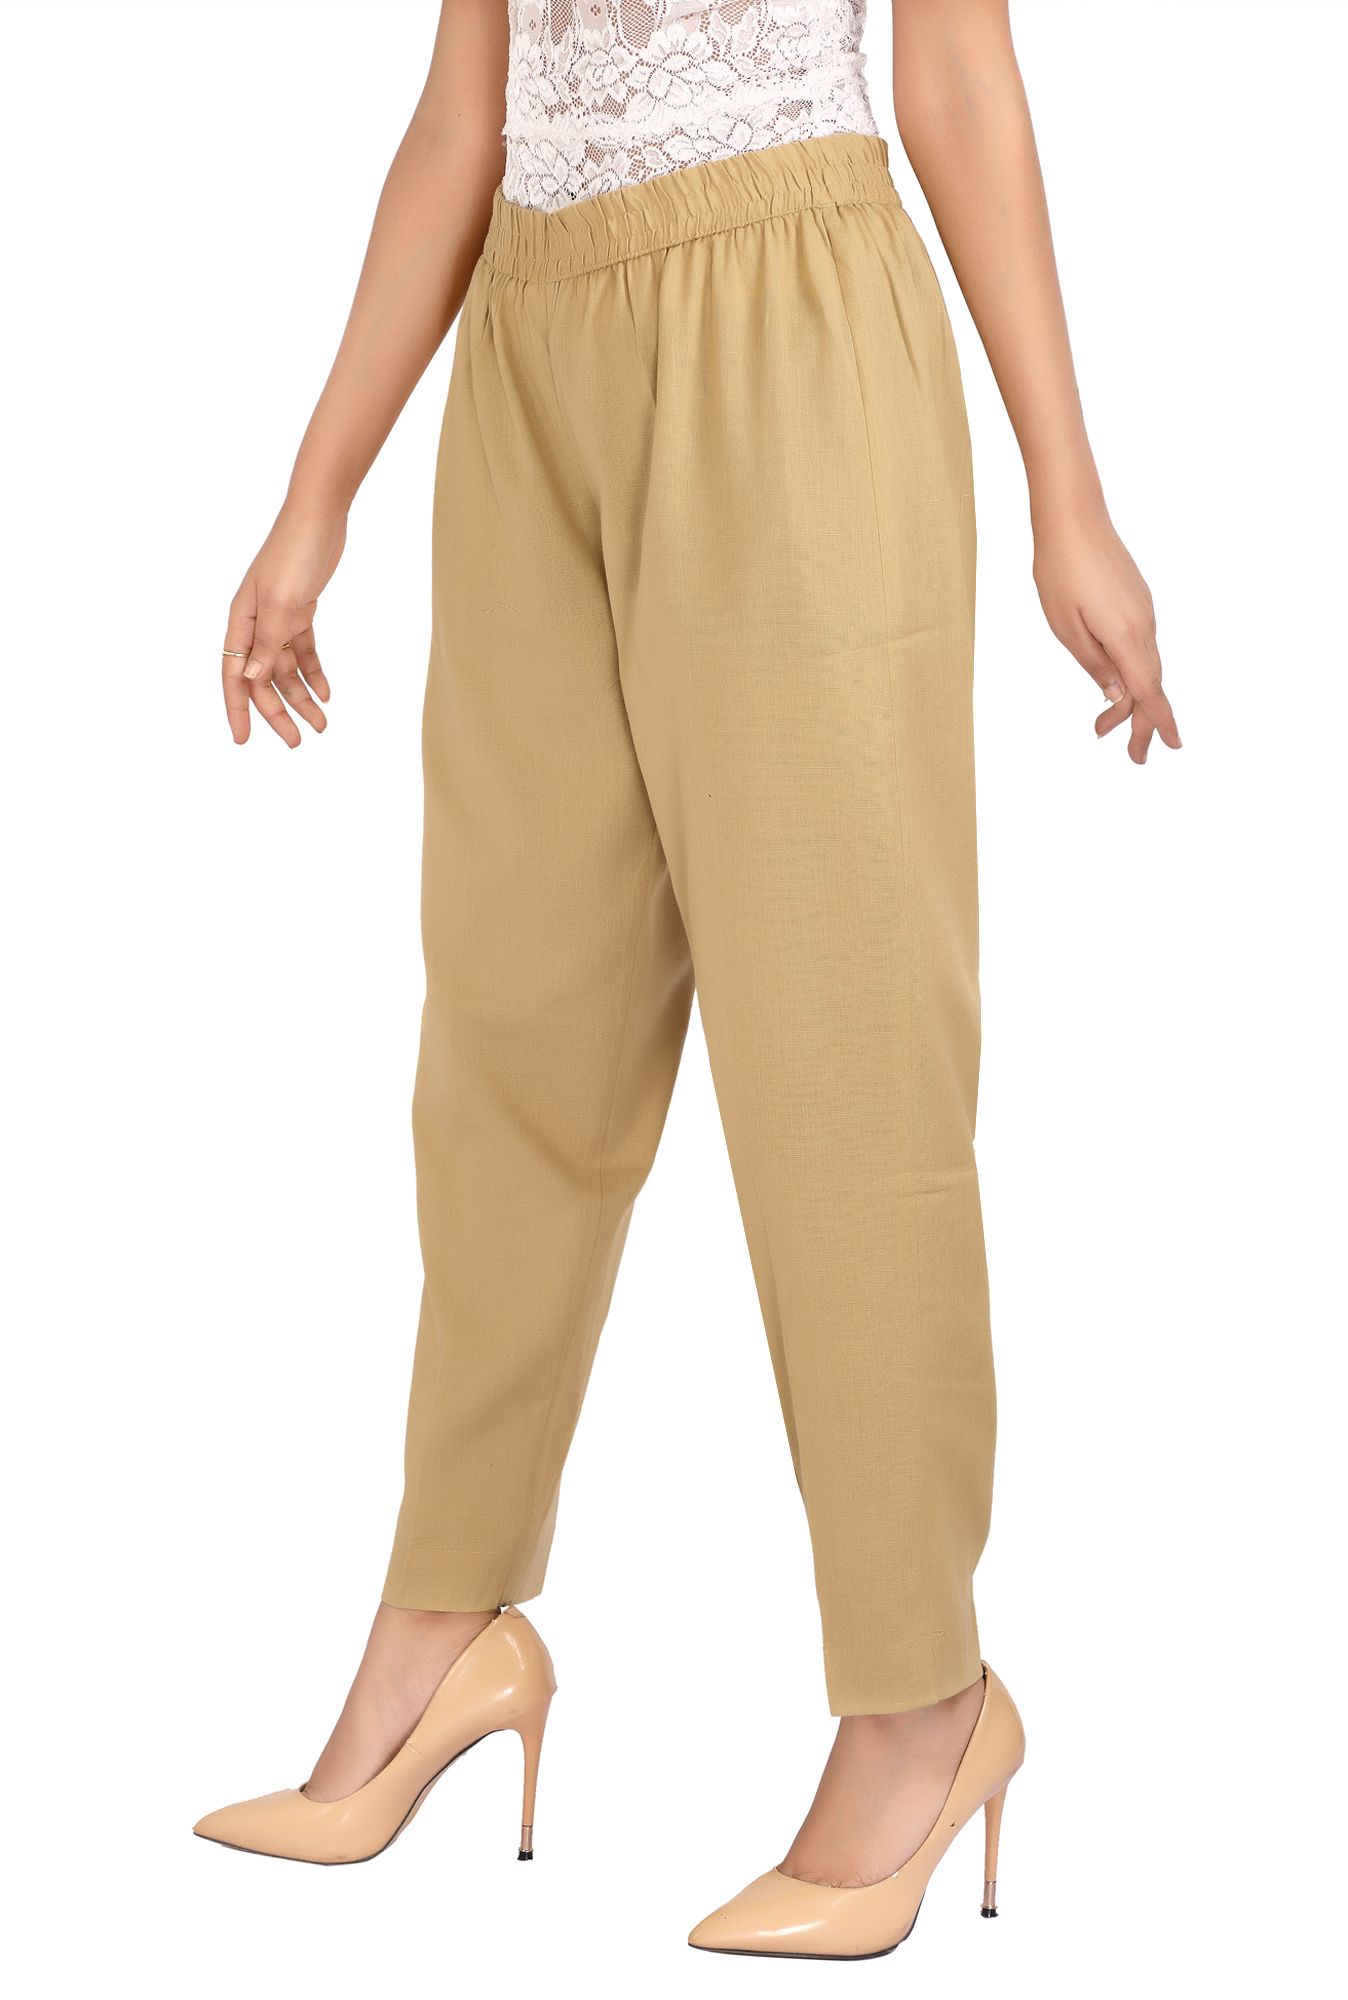 Women's Beige Cotton Pant